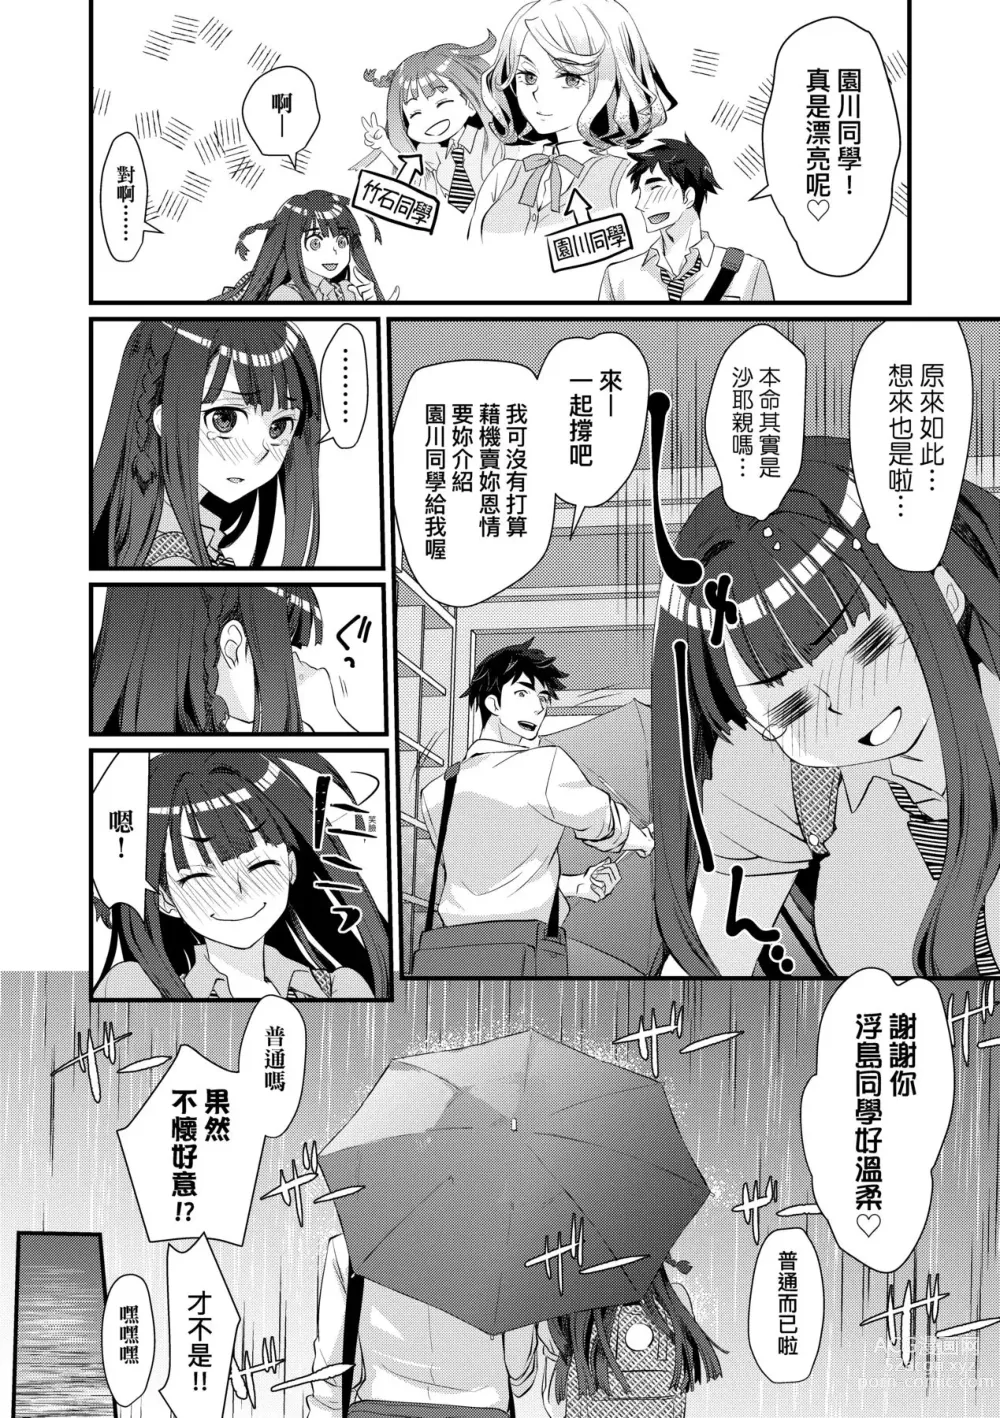 Page 11 of manga Echiechi JK Houimou (decensored)